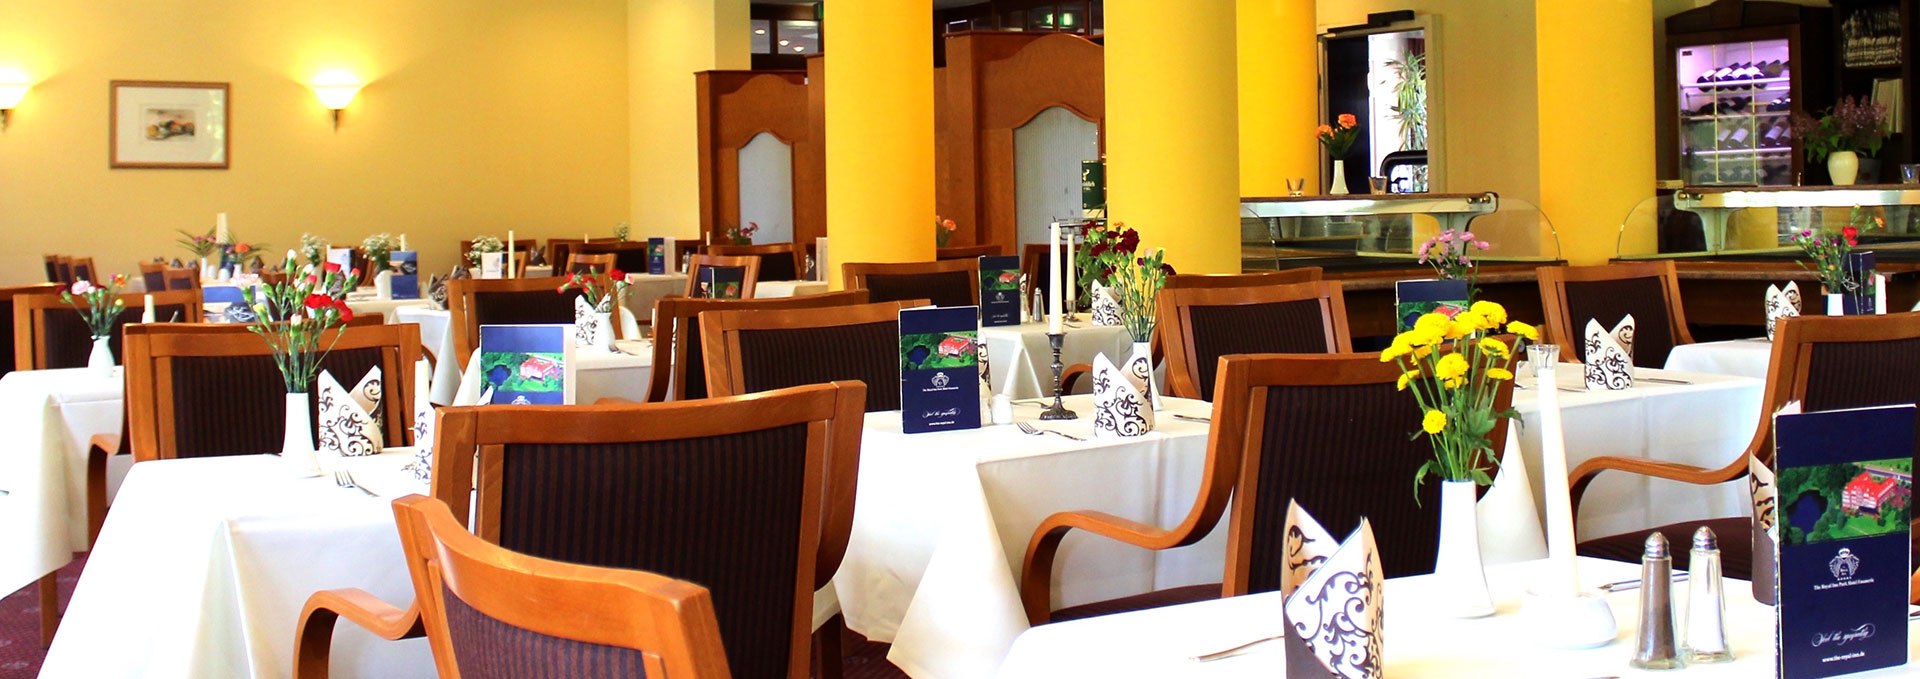 Restaurant, © The Royal Inn Park Hotel Fasanerie